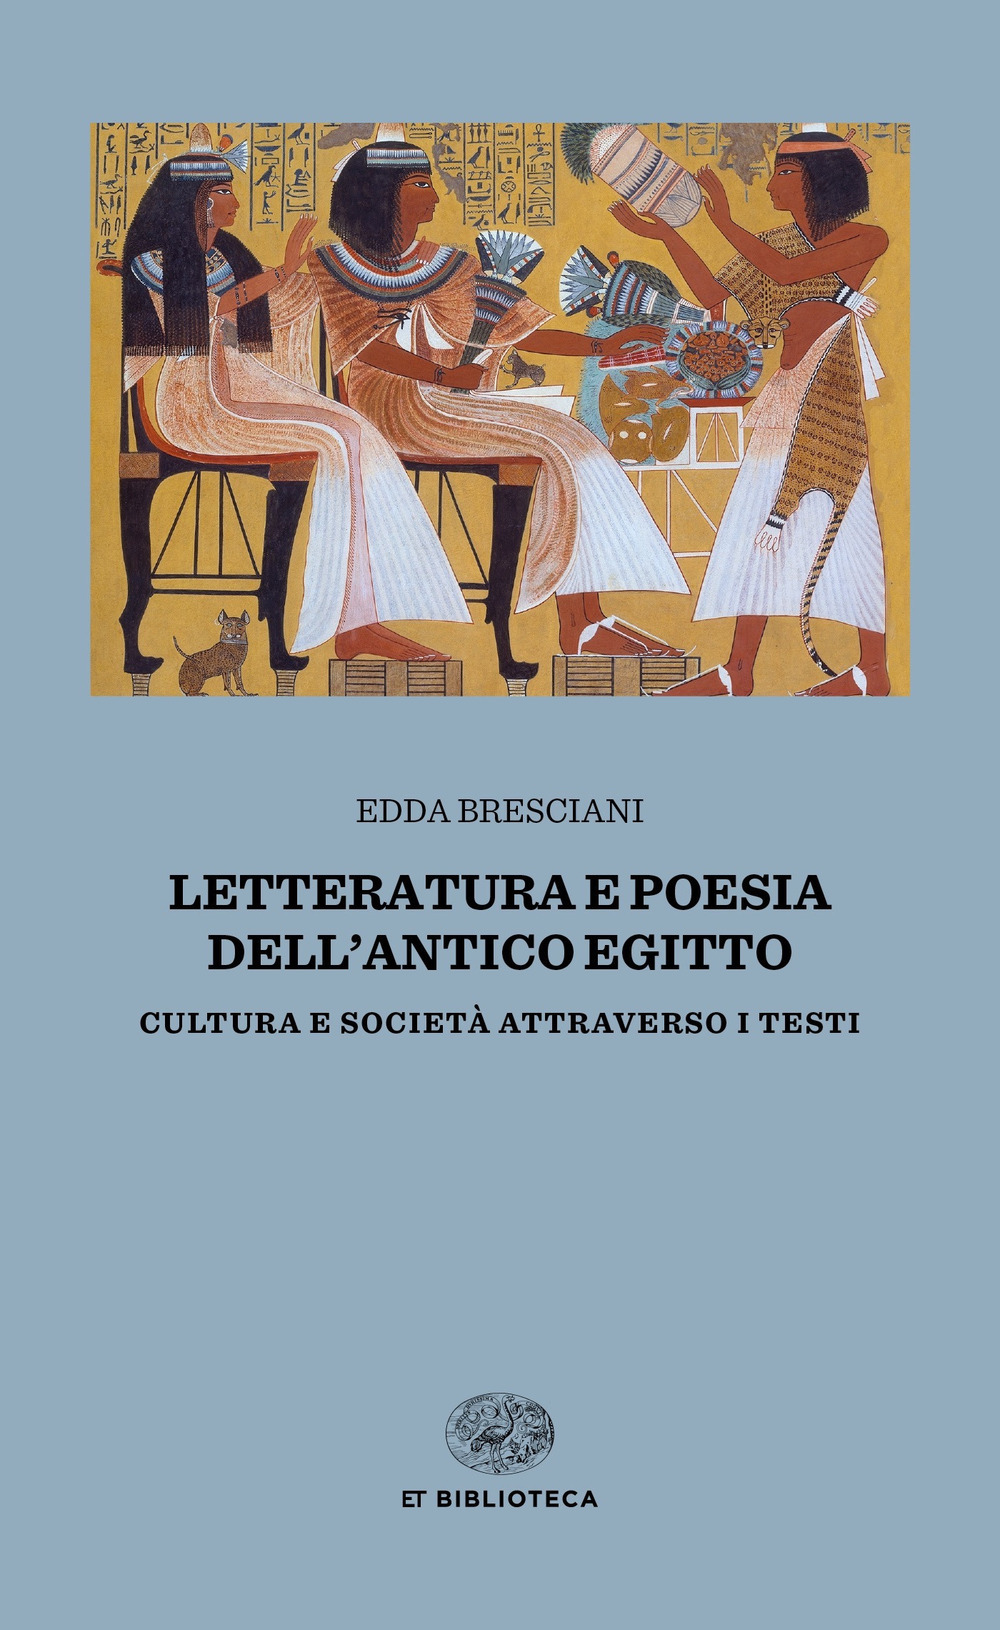 Letteratura e poesia dell'antico Egitto. Cultura e società attraverso i testi - Edda Bresciani - Einaudi